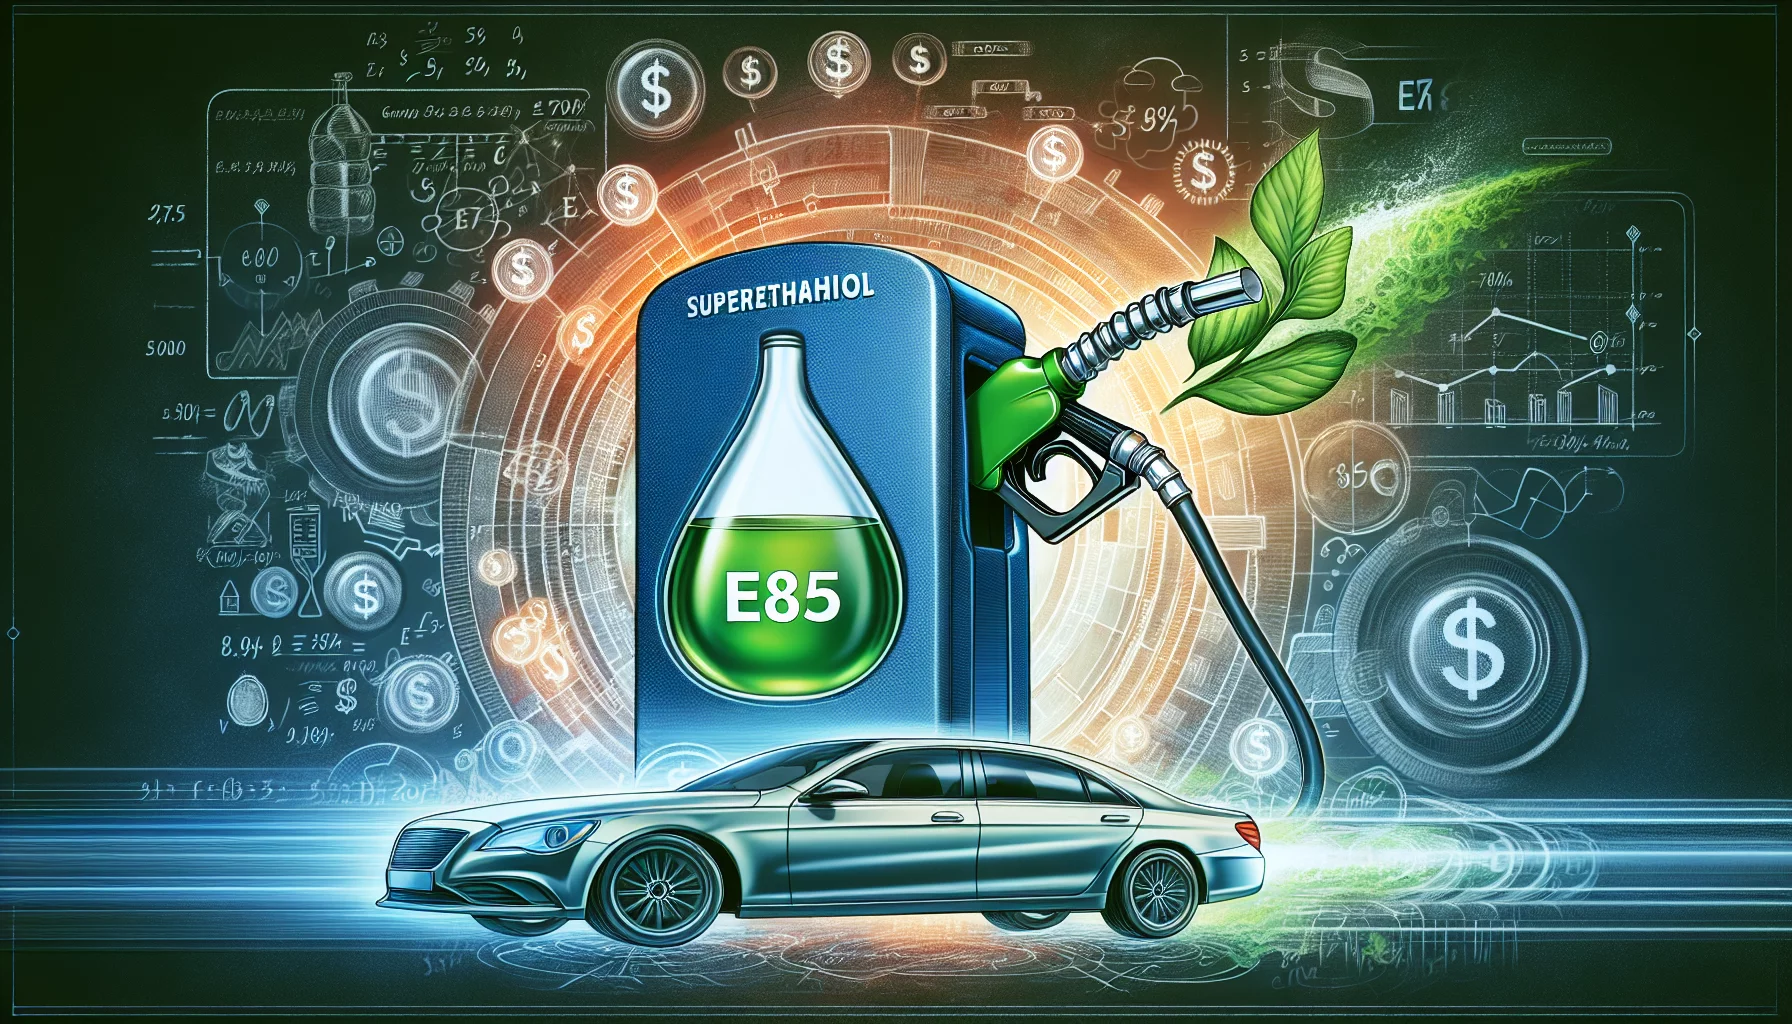 Le superéthanol e85 dans une voiture essence : un choix intelligent et économique